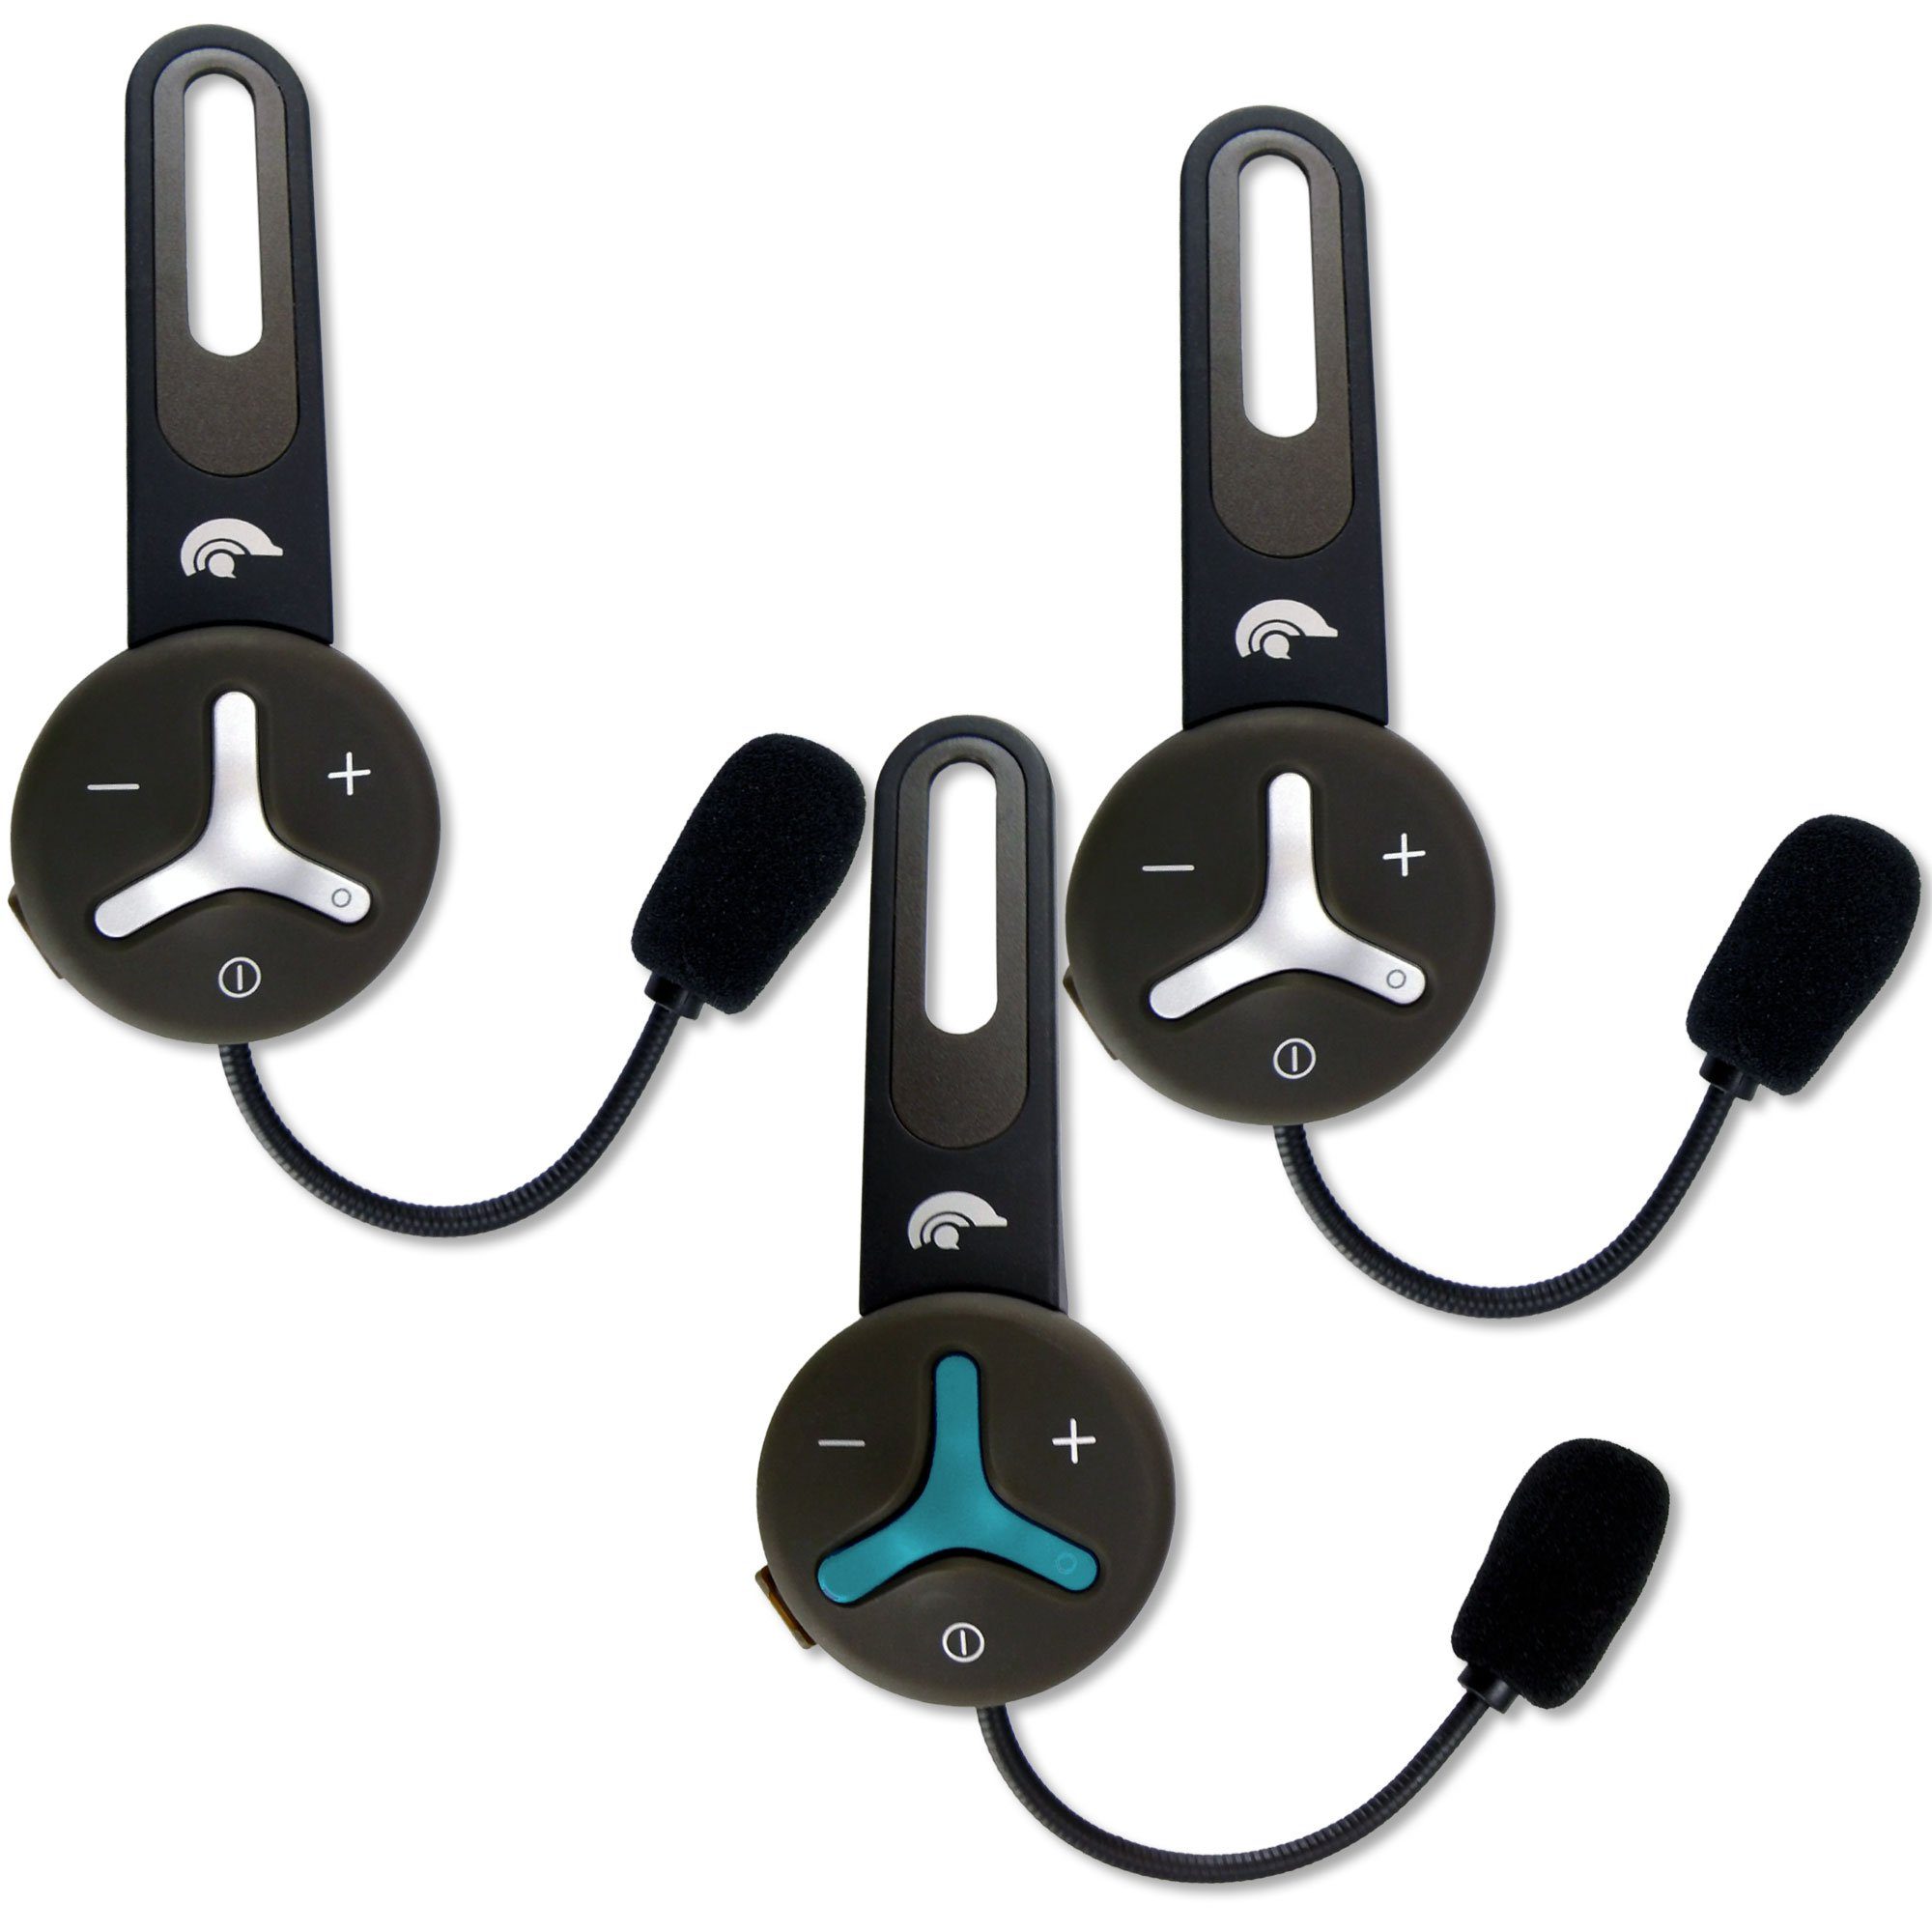 Headset, Freisprechanlage, Buddy Chat 3 (Bluetooth, zu 1000m, für Teilnehmer) Helm, Intercom, Bluetooth-Kopfhörer Funkgerät, Gegensprechanlage, bis bis Akku, Trio BuddyChat Headset,